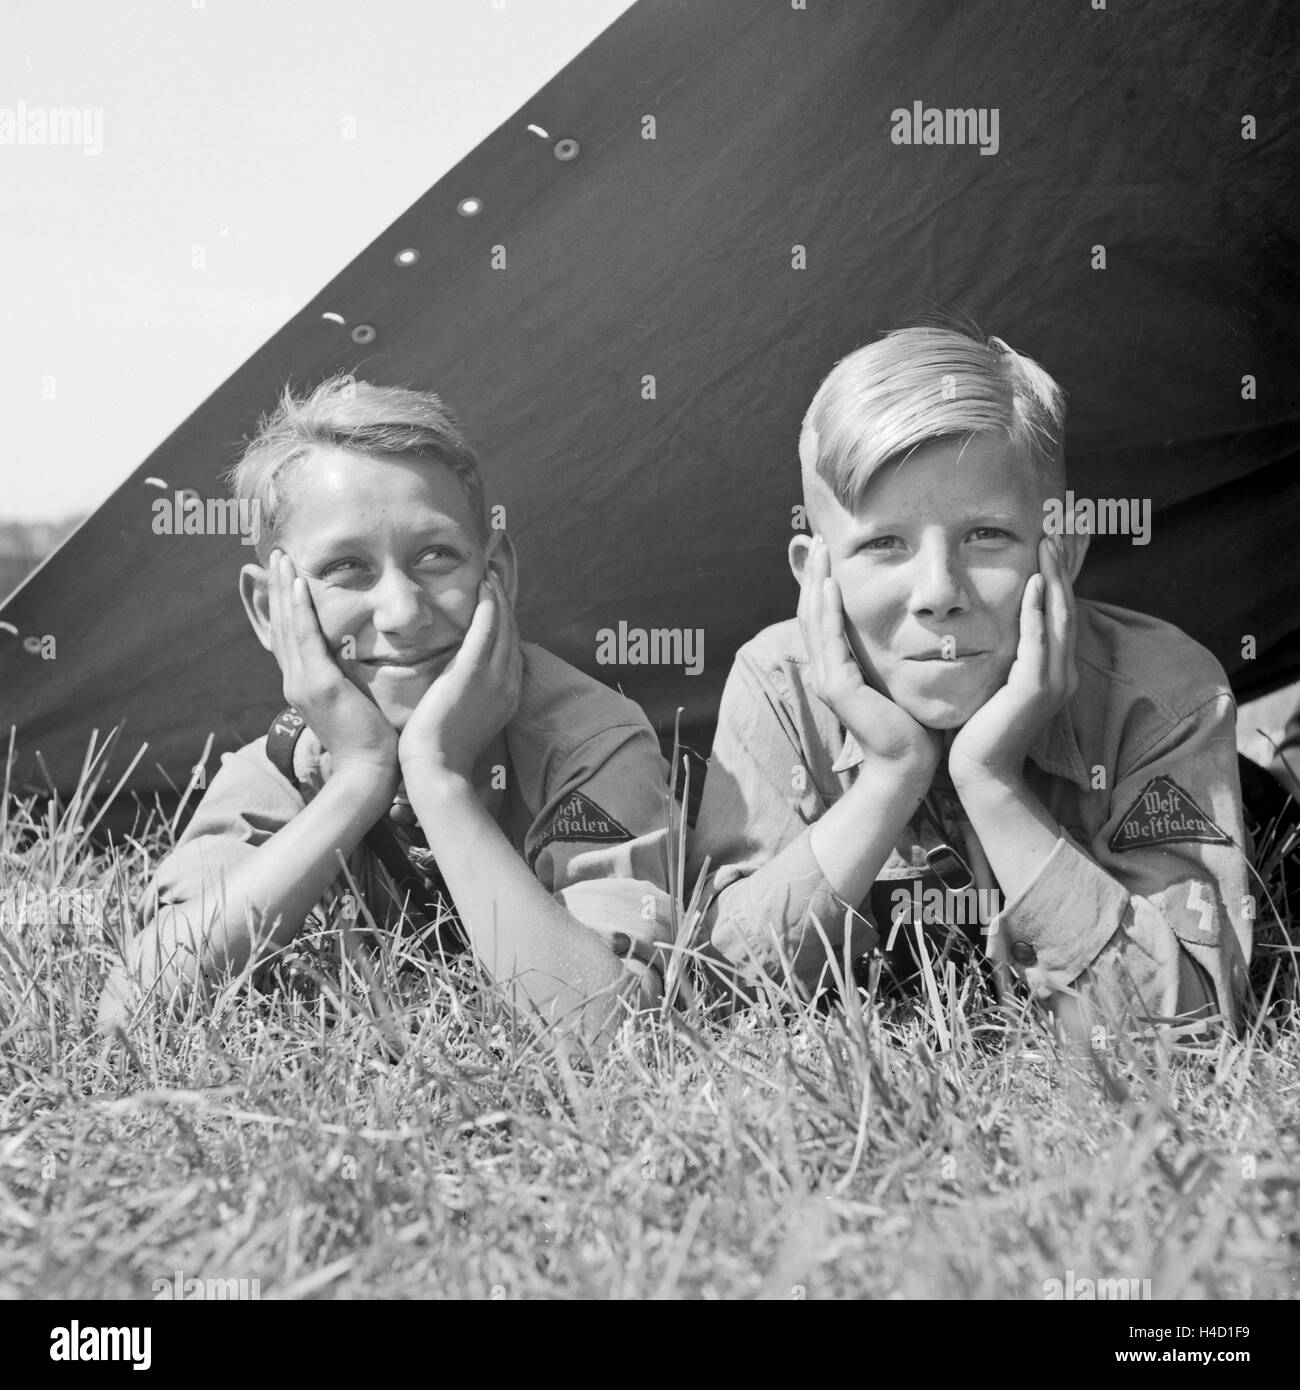 Zwei Hitlerjungen vom Gau Westfalen liegen in ihrem Zelt und schauen zufrieden heraus, Deutschland 1930er Jahre. Two Hitle youths watching happily out of their tent, Germany 1930s. Stock Photo